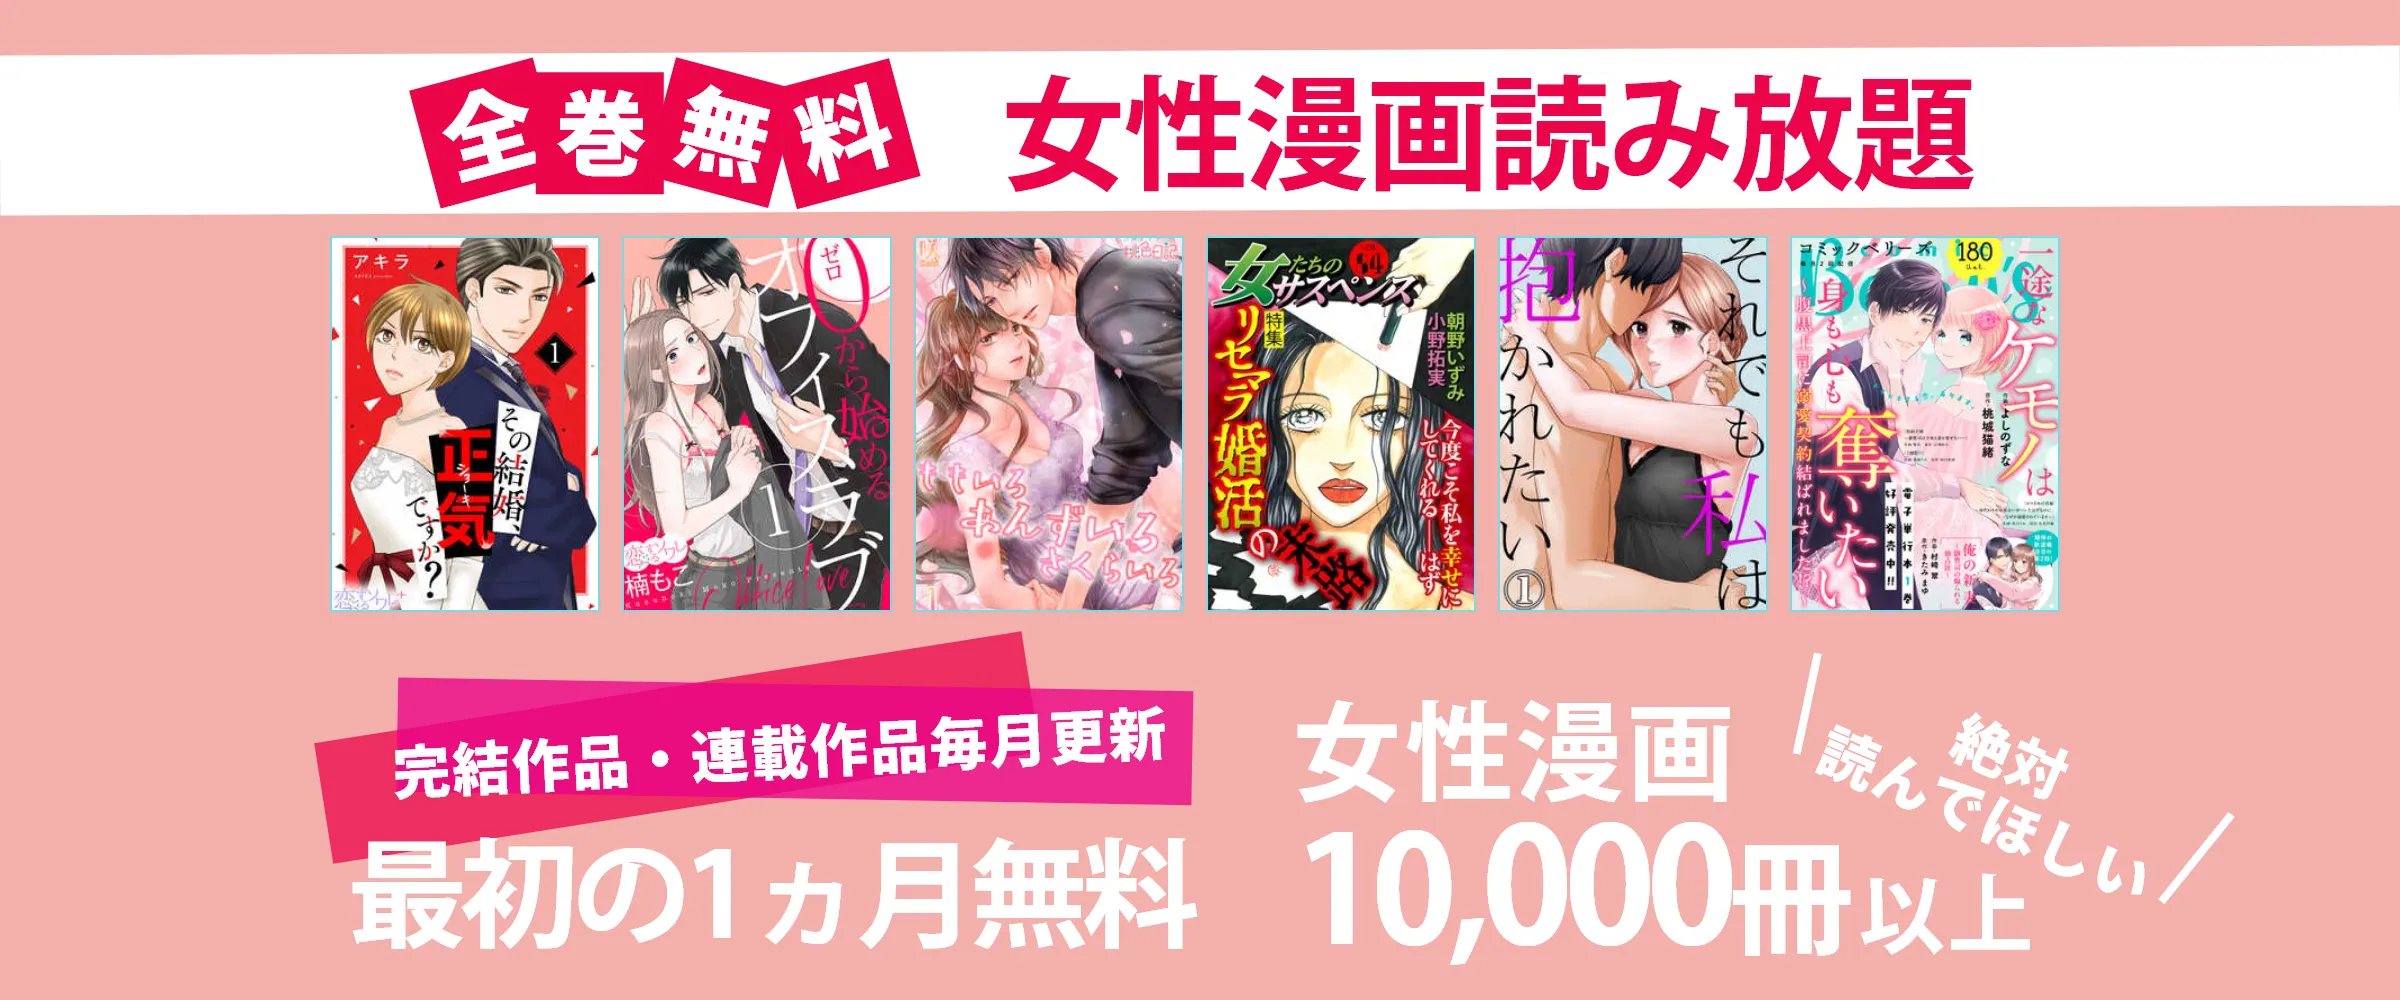 たった550円で女性漫画10,000冊以上読み放題。最初の1ヵ月は無料。